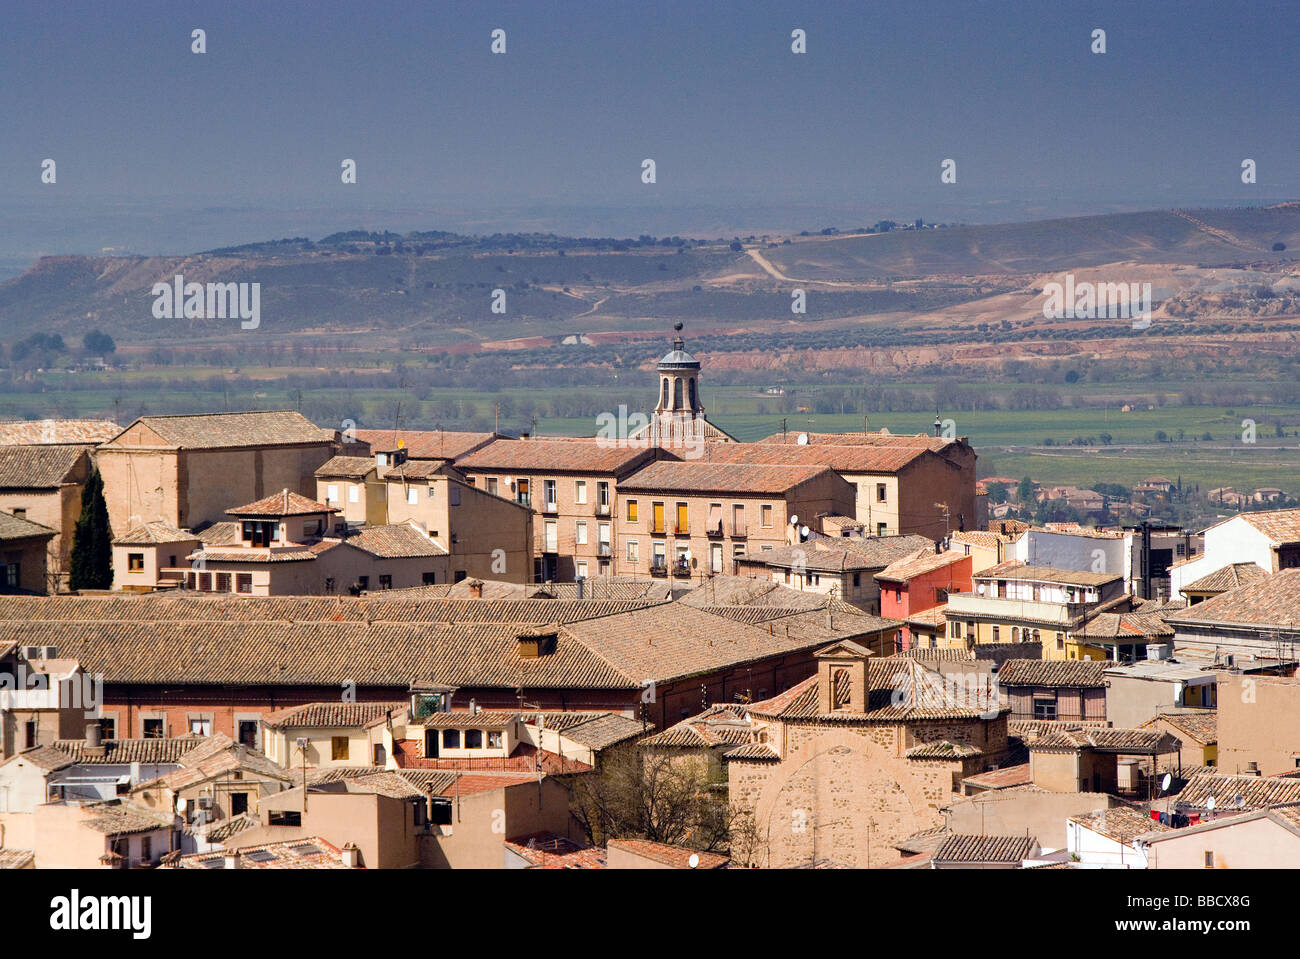 Vista aerea de la ciudad de toledo desde el Alcazar View of Toledo from the Alcazar Stock Photo